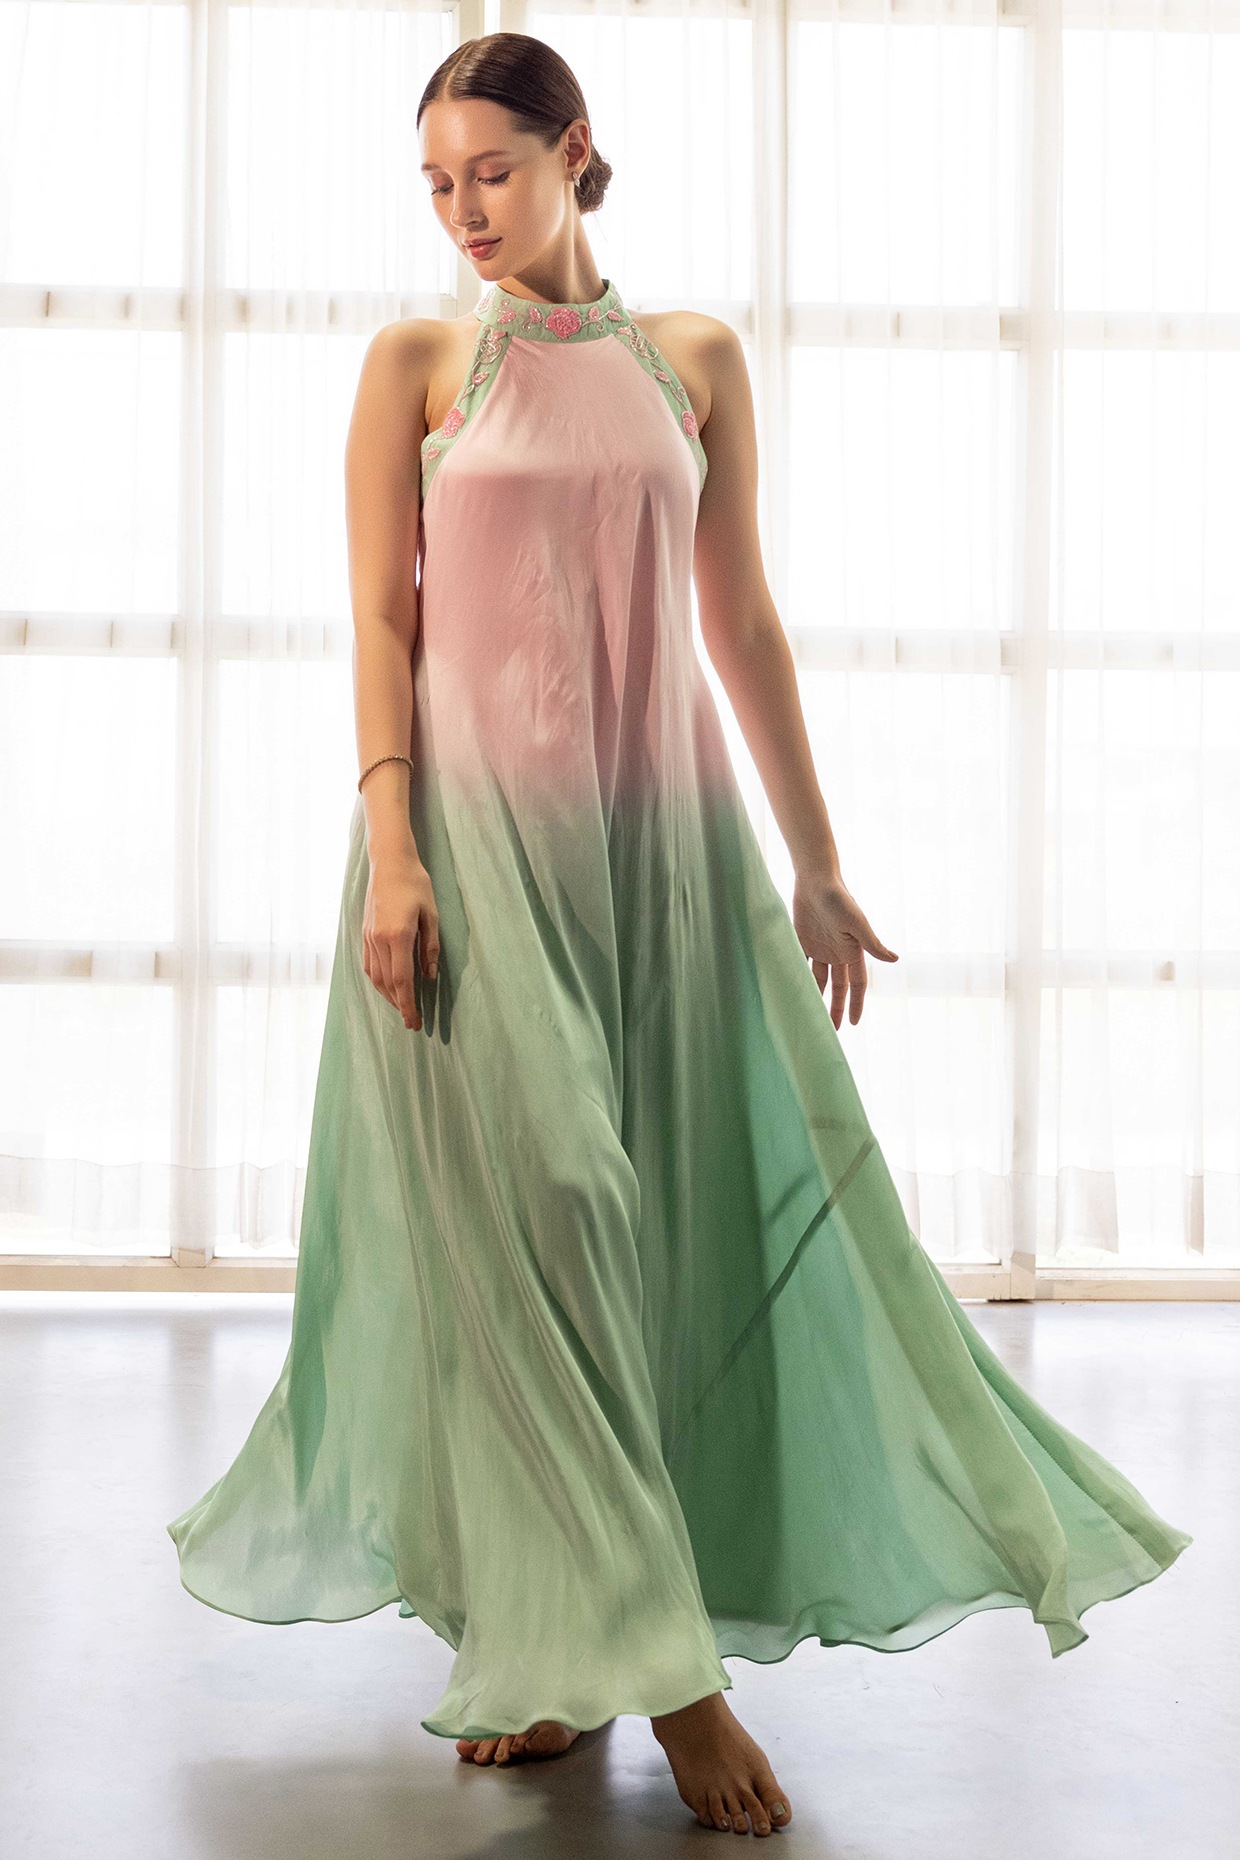 Tiffany Designs - 16029 | Lasting Impressions Formal Wear